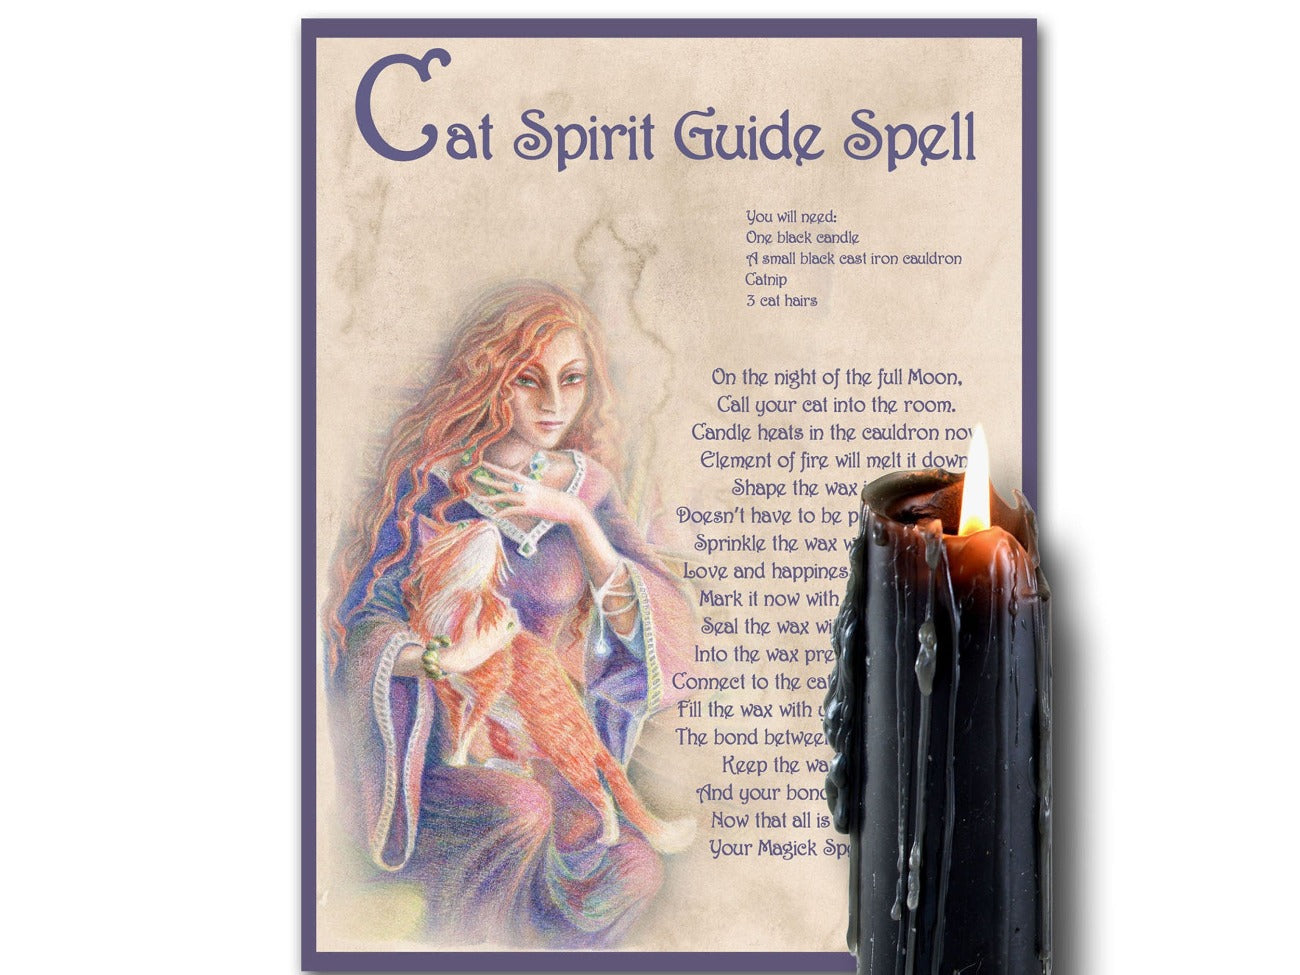 CAT SPIRIT GUIDE, Get a Cat Spiritual Helper, Cat Familiar, Wicca Witch Cat Spell Magic, Pet Ritual, Witchcraft Cat Spirit Helper Guide - Morgana Magick Spell